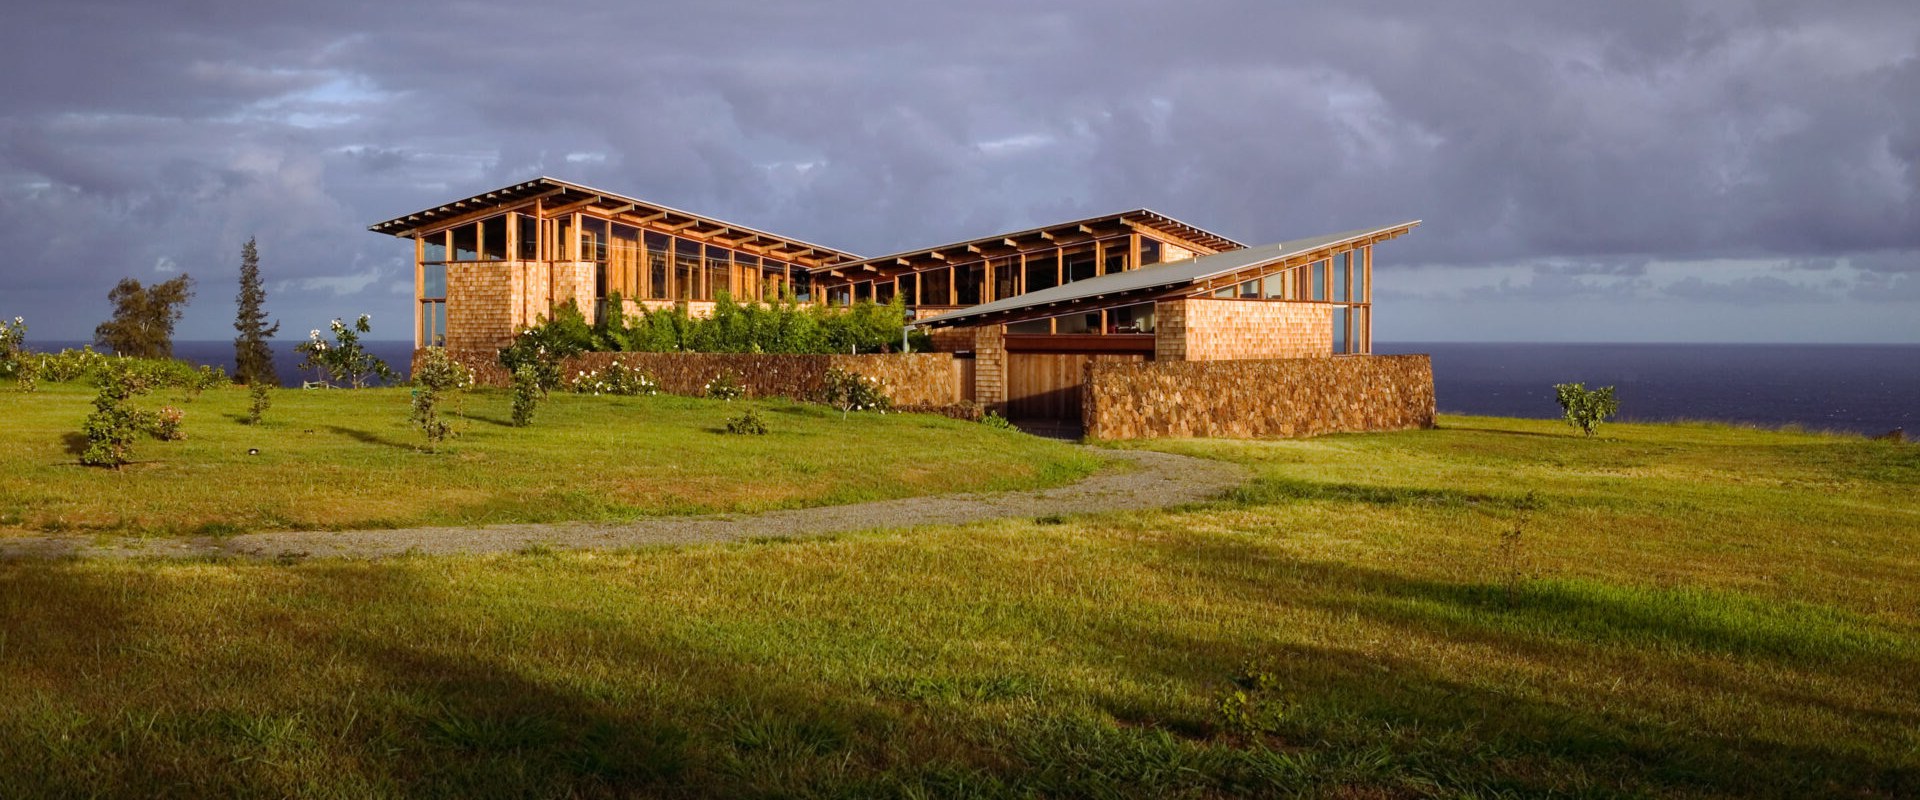 Hawaiian Architecture: A Reflection of Ohana (Family)